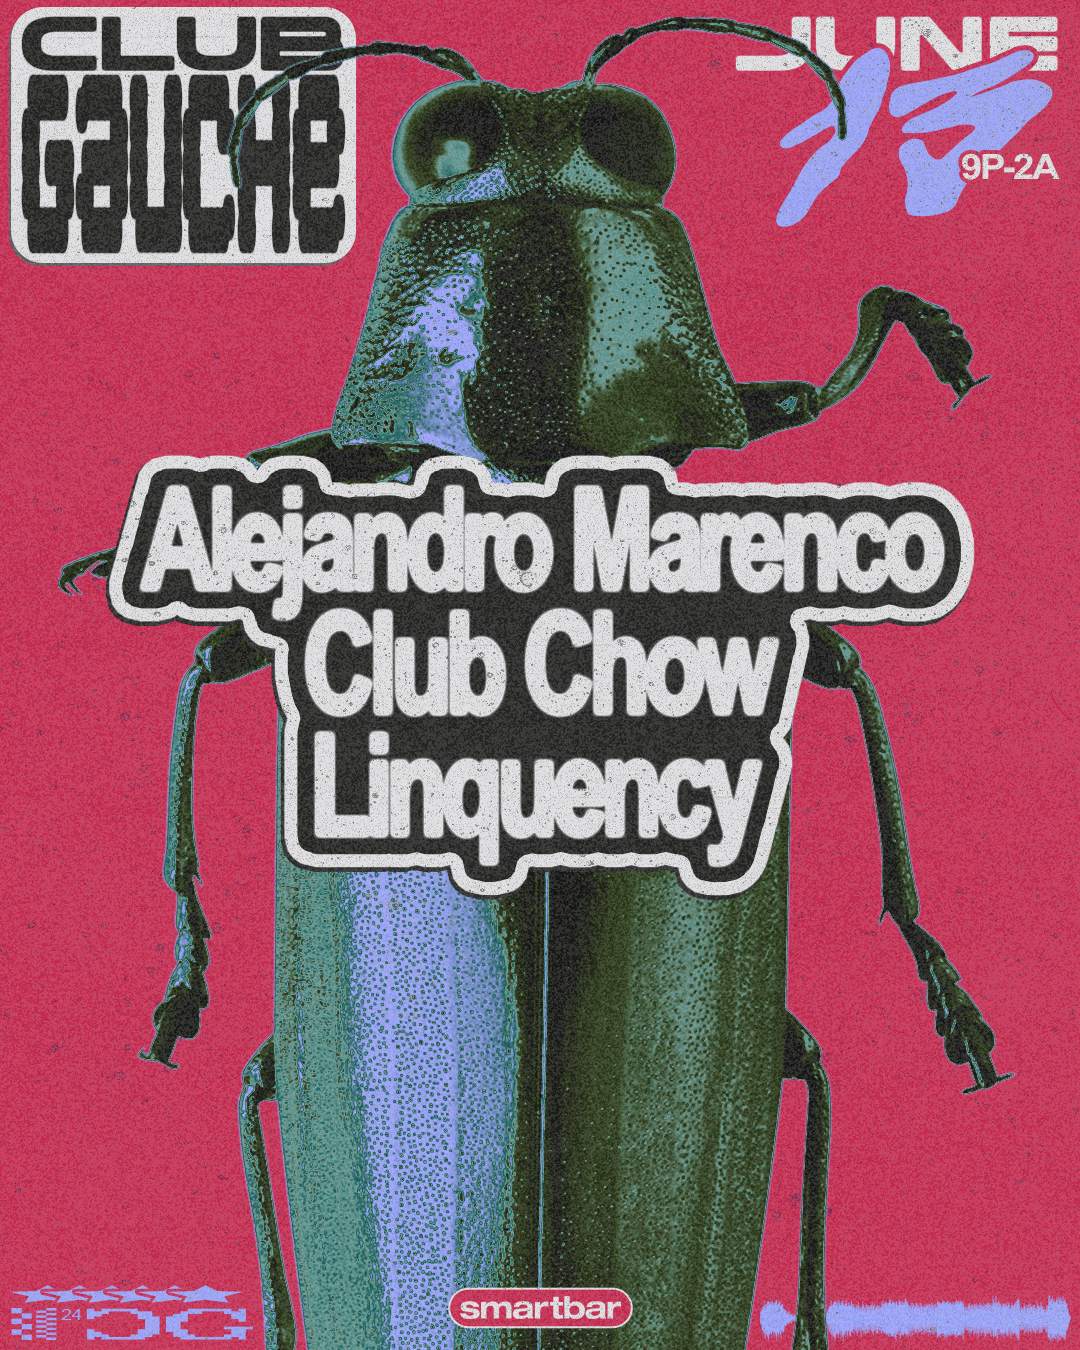 Club Gauche feat. Alejandro Marenco - Linquency - Club Chow - Página frontal